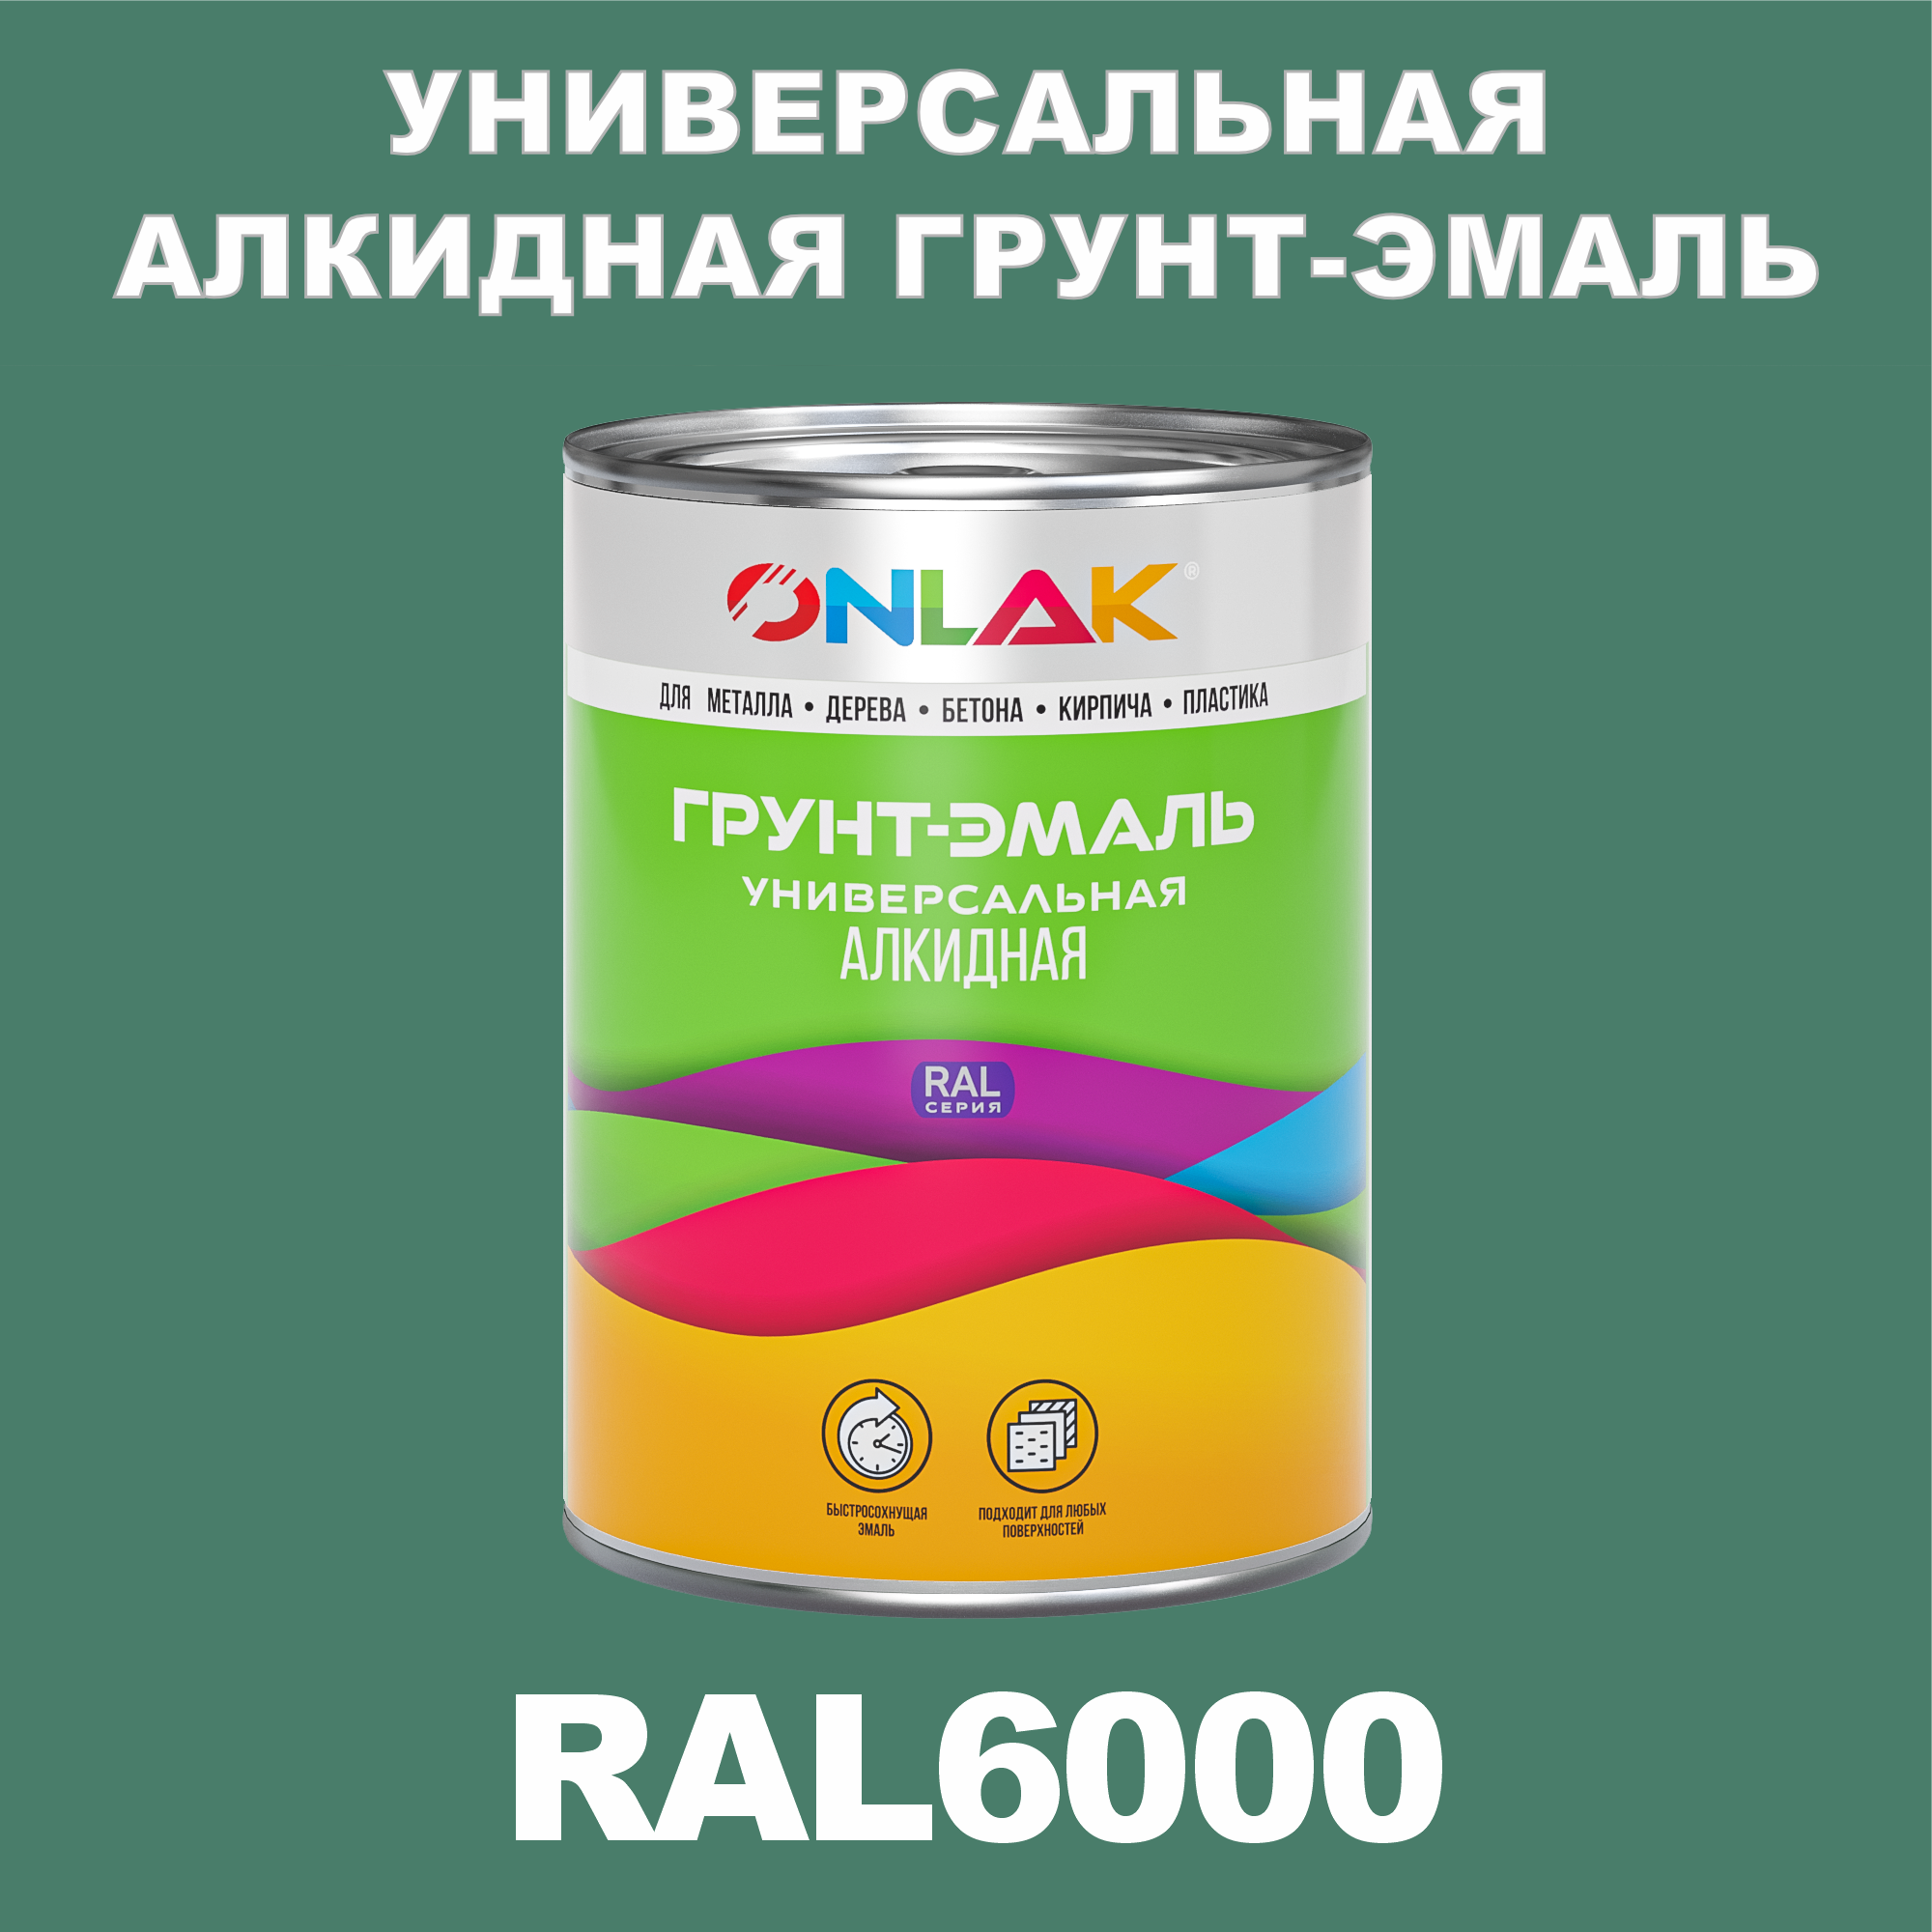 Грунт-эмаль ONLAK 1К RAL6000 антикоррозионная алкидная по металлу по ржавчине 1 кг грунт эмаль yollo по ржавчине алкидная зеленая 0 9 кг